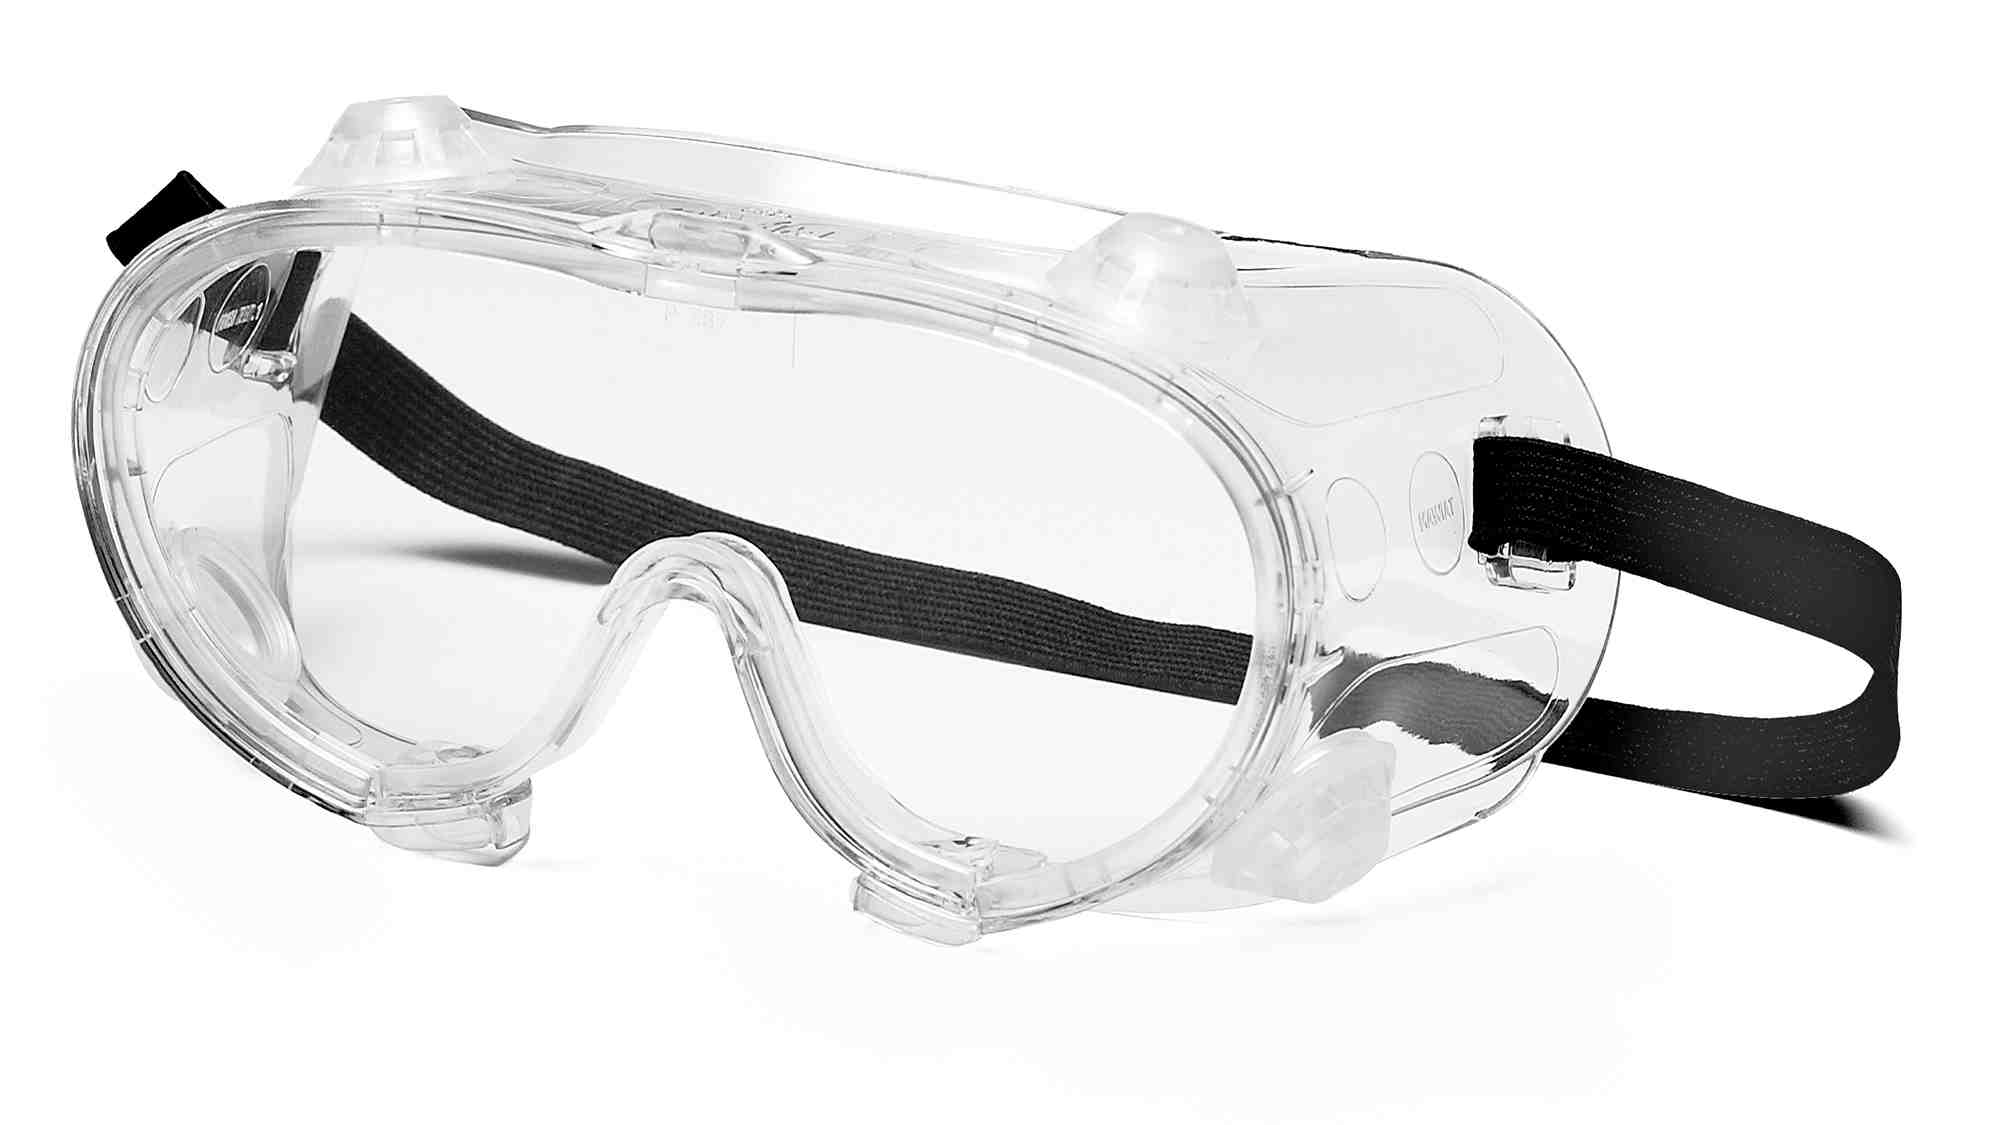 Очки защитные красные. ANSI Z87.1 очки. Очки защитные g-07-130 Clear. Очки газосварщика ANSI Z87.1. Очки газосварщика Ампаро премиум (222503).